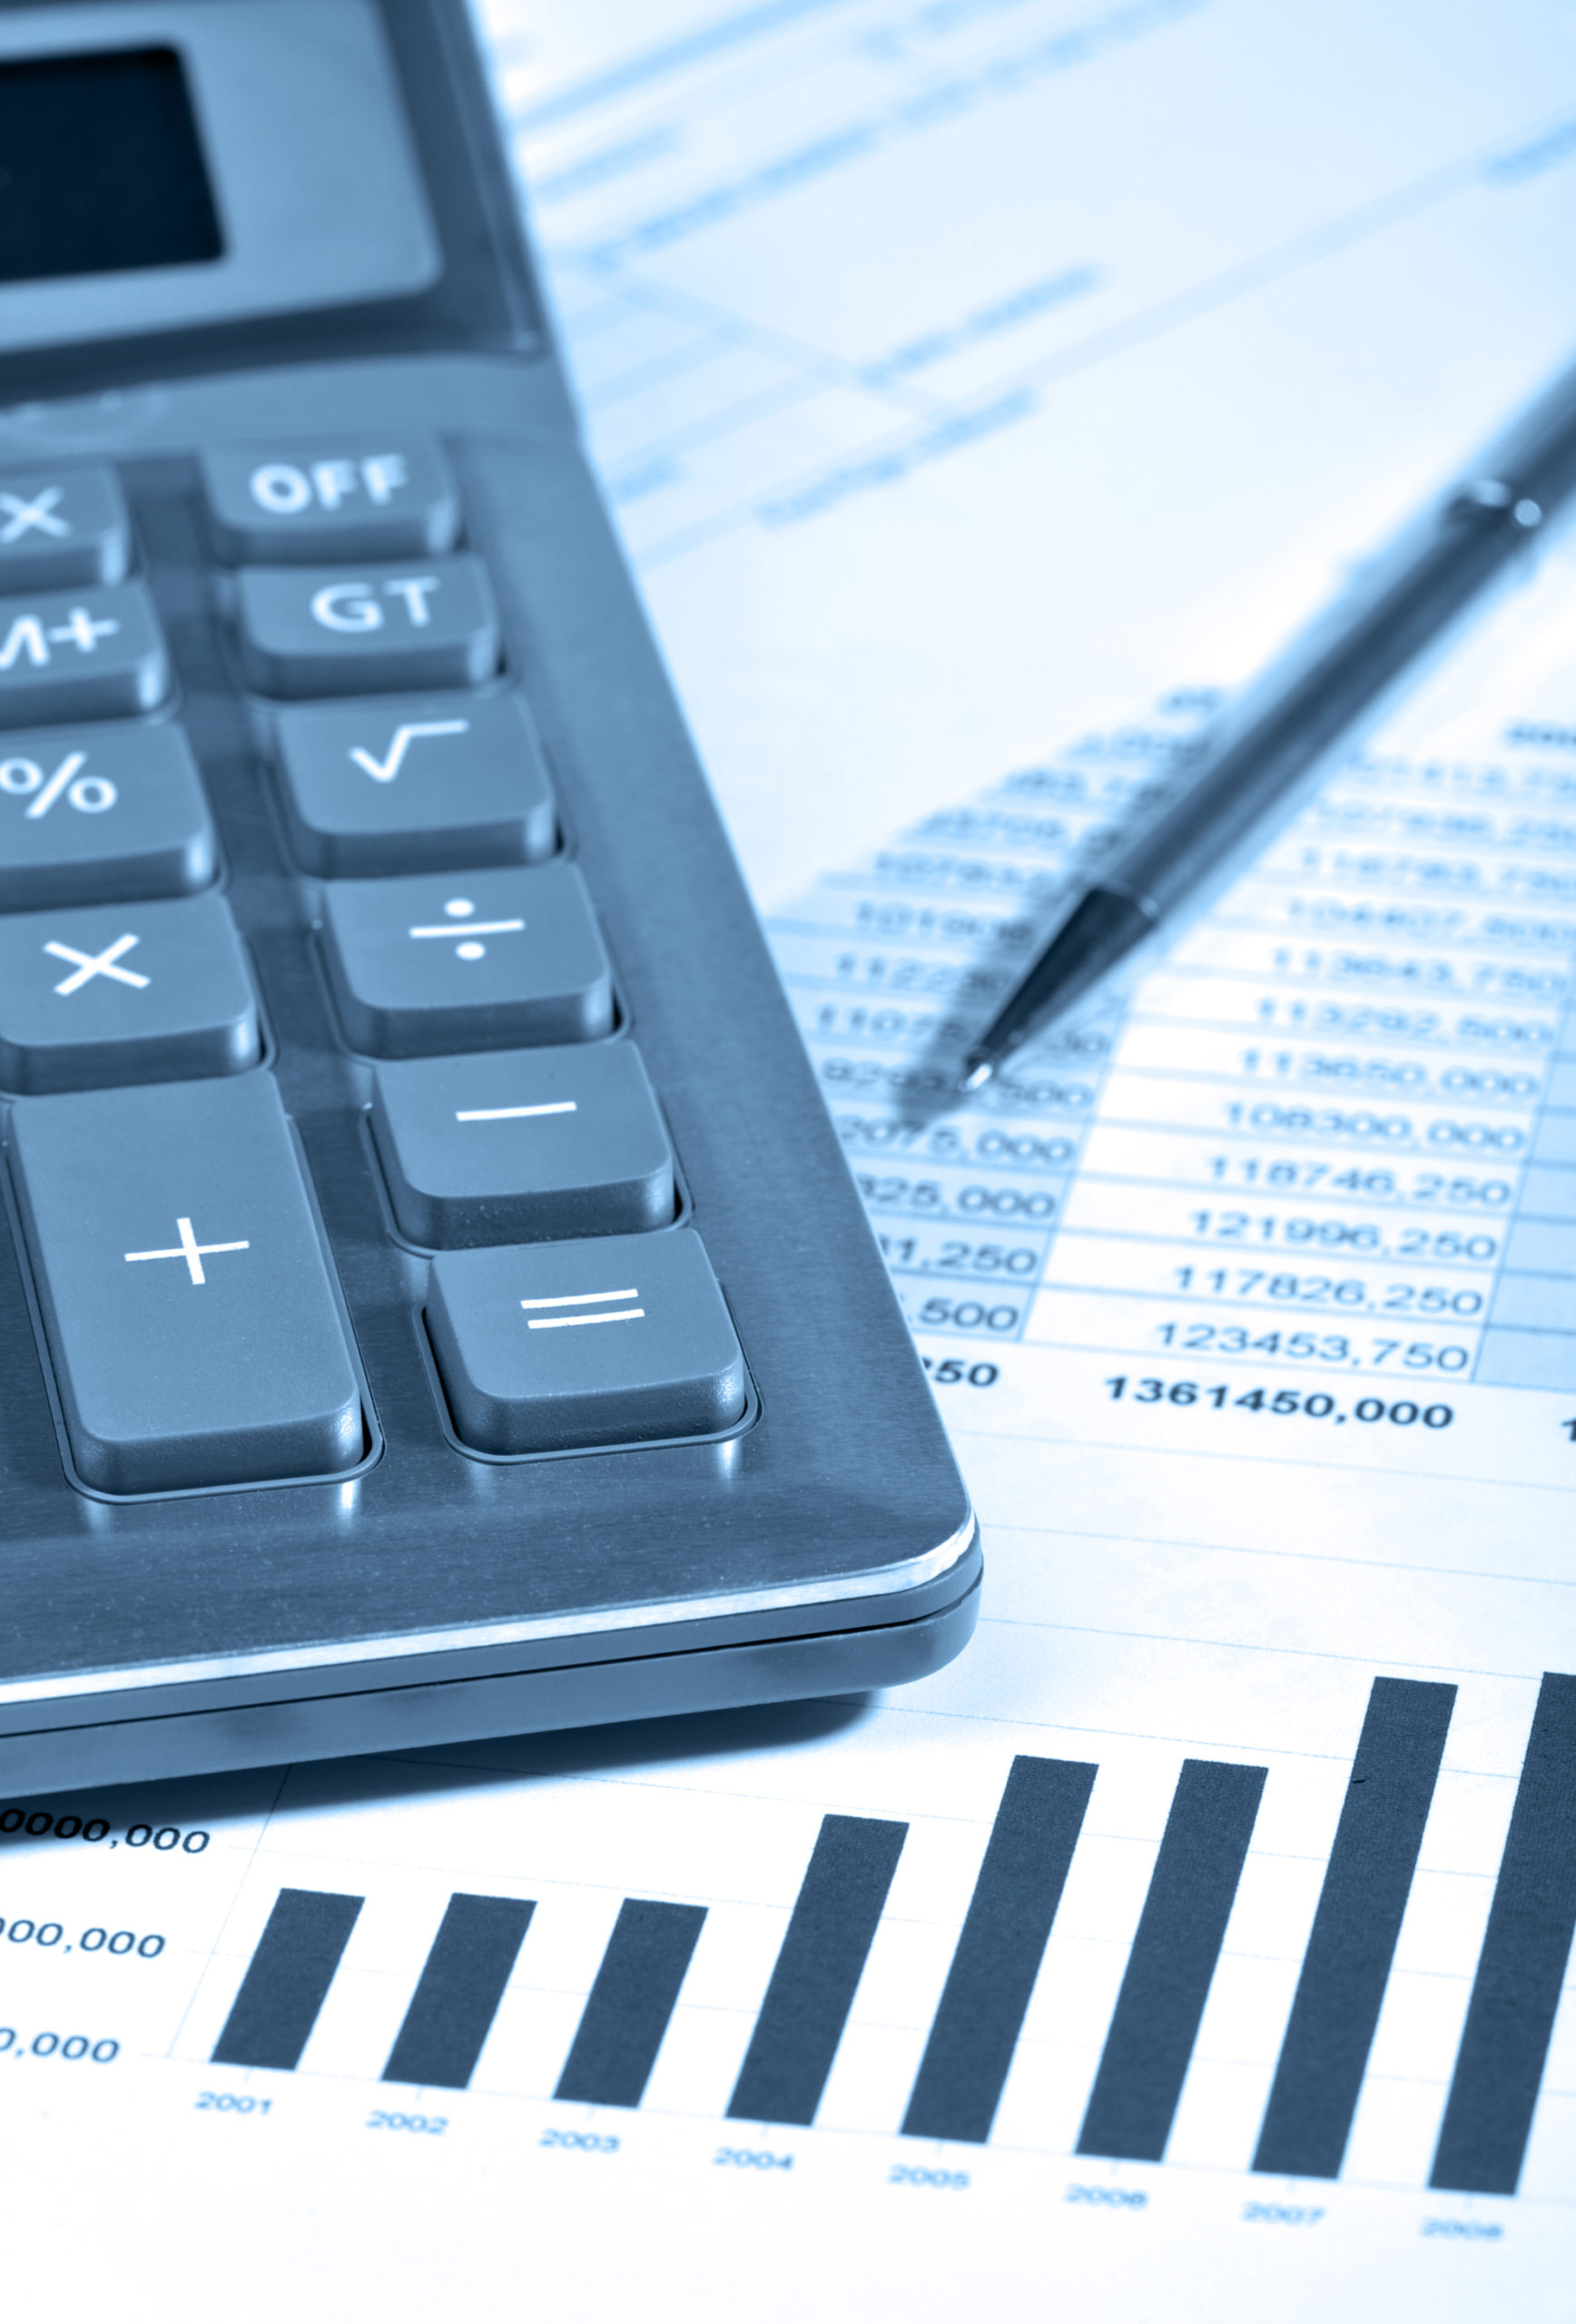 5 Amazon FBA Calculators for Revenue, Profit & Fees Checking